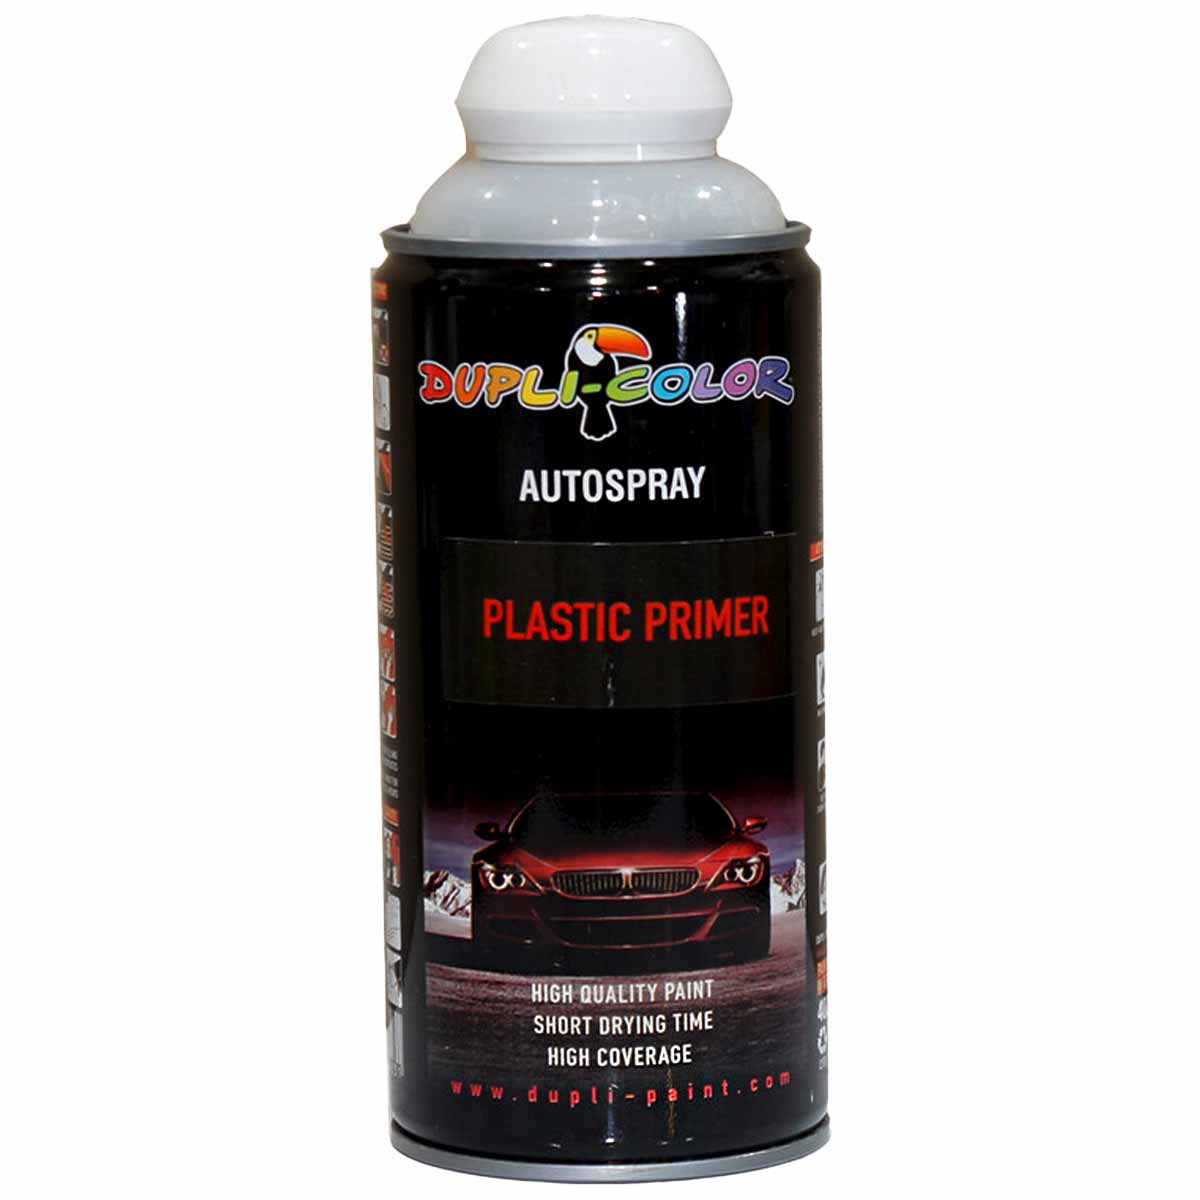 اسپری آستر پلاستیک دوپلی کالر PLASTIC PRIMER